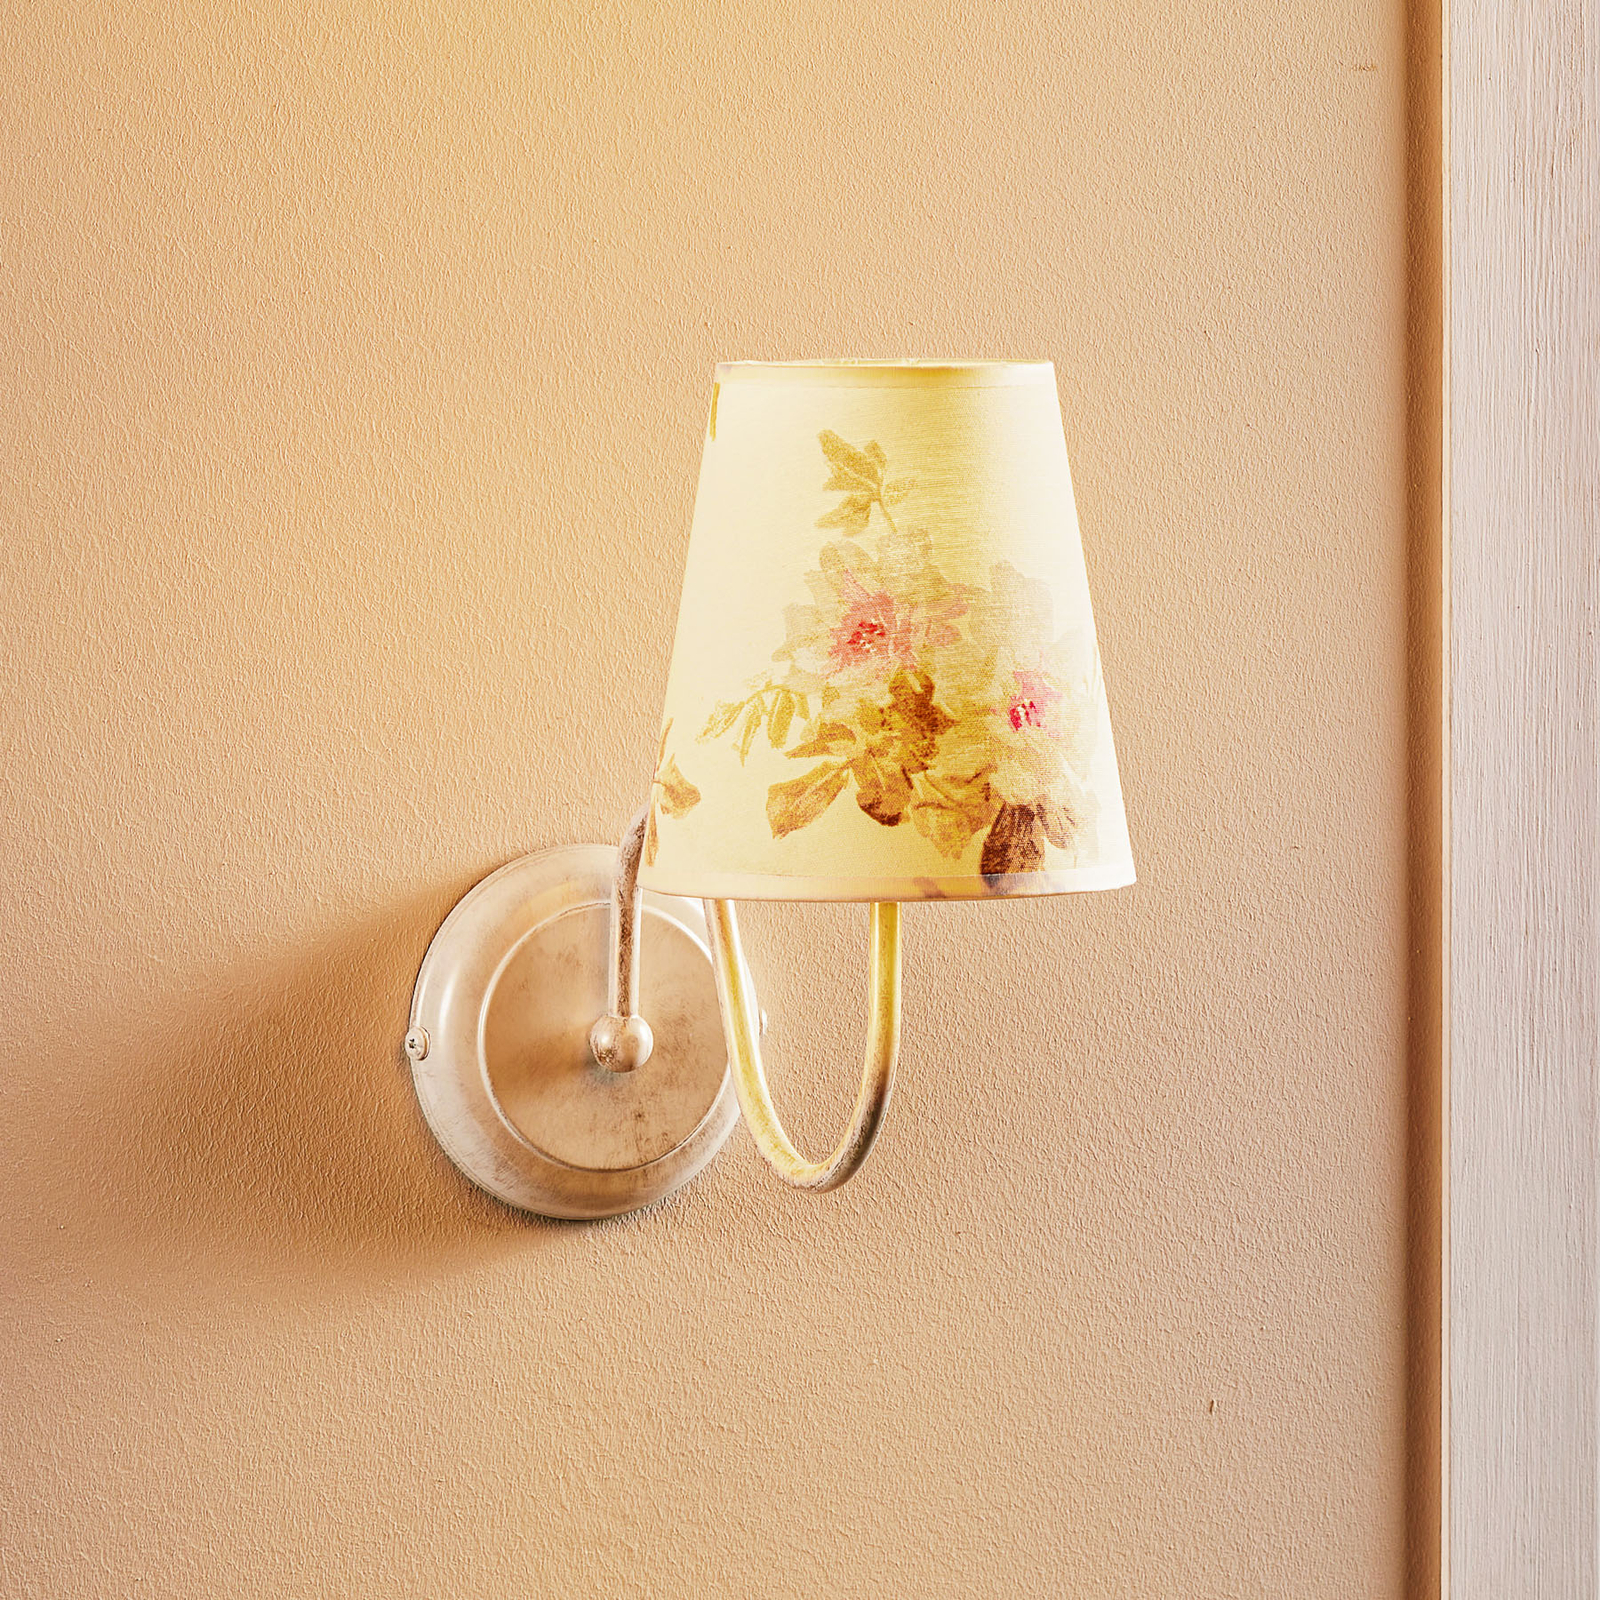 Sara wall light with printed fabric lampshade